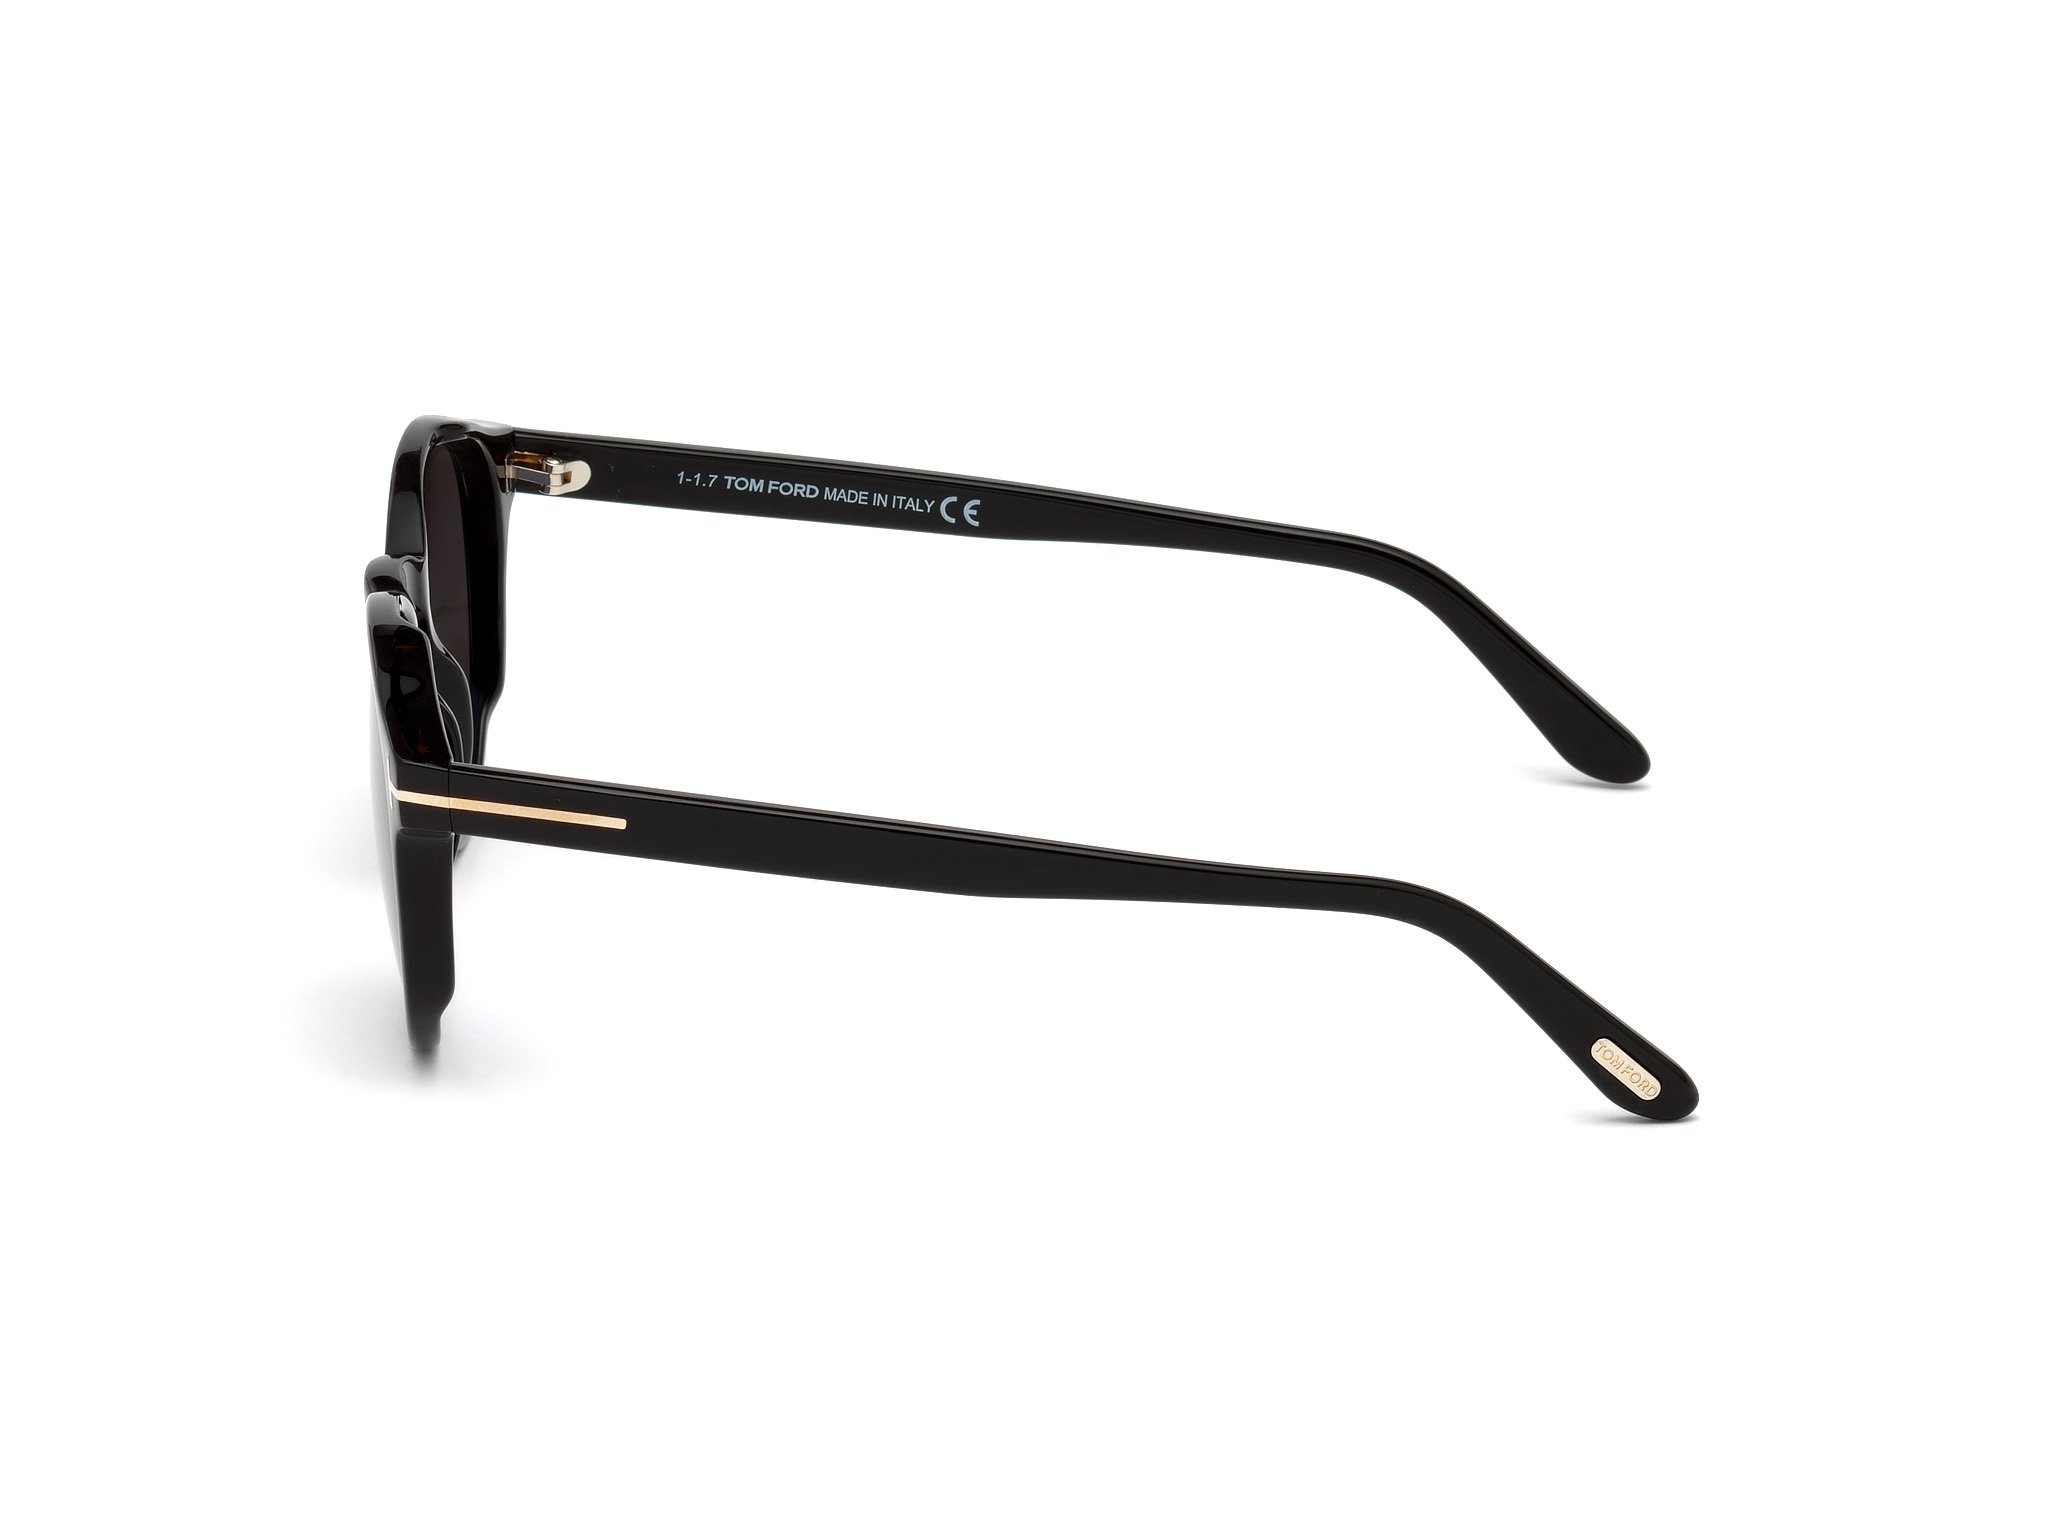 Das Bild zeigt die Sonnenbrille IAN FT0591 von der Marke Tom Ford in schwarz seitlich